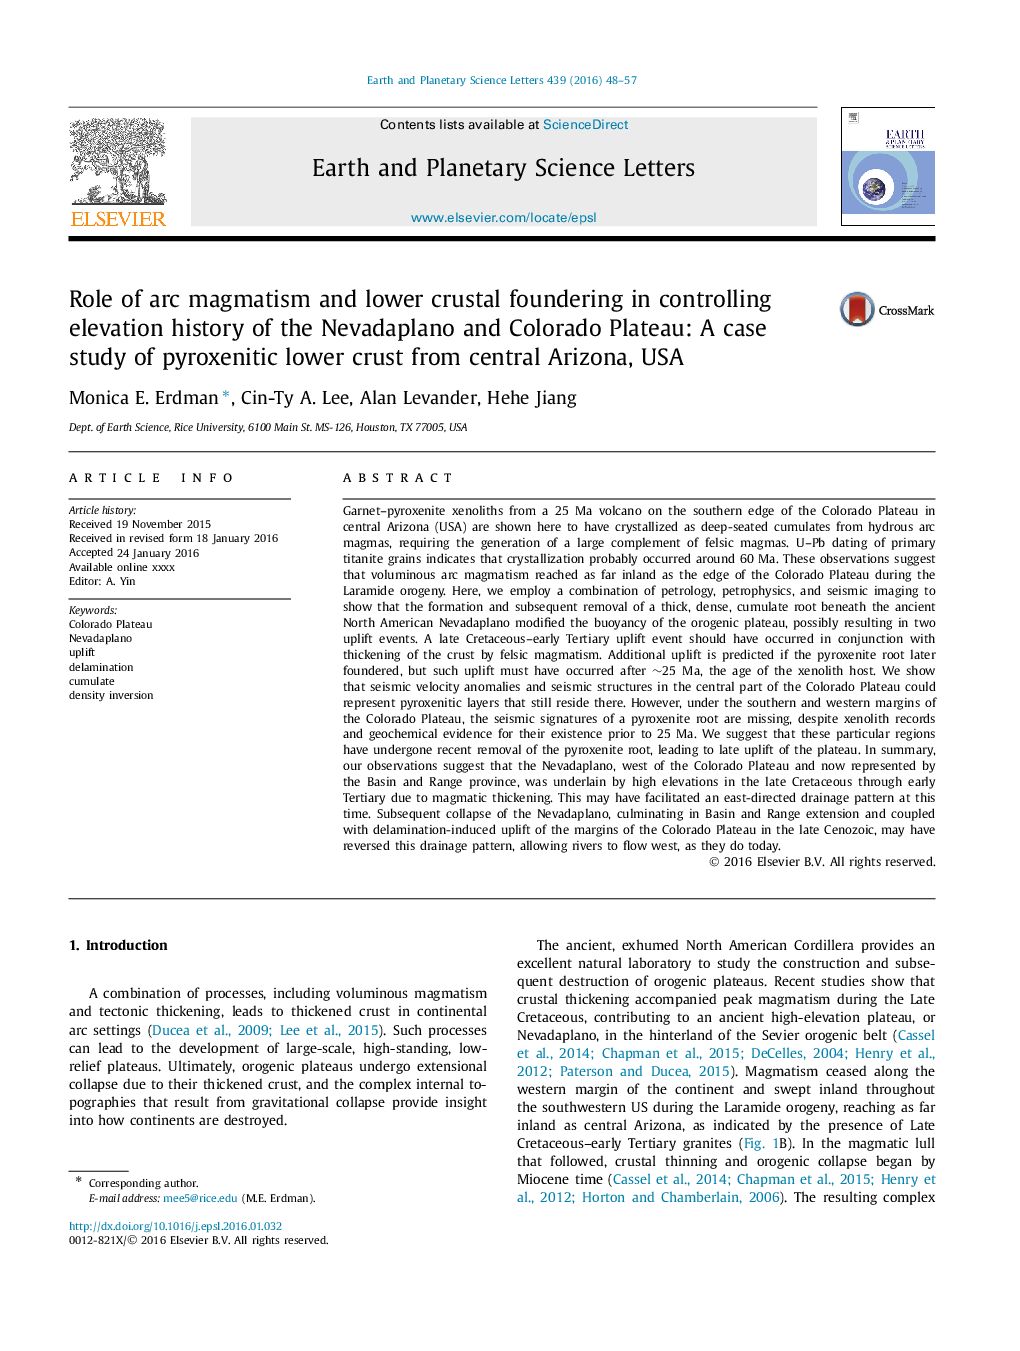 نقش ماگماتیسم قوسی و پایین ترین پوسته شدن در کنترل ارتفاع ارتفاعات نوا و پالائو کلوادو: مطالعه موردی پوسته پایین پیروکسنیتی از مرکز آیزینا، ایالات متحده 